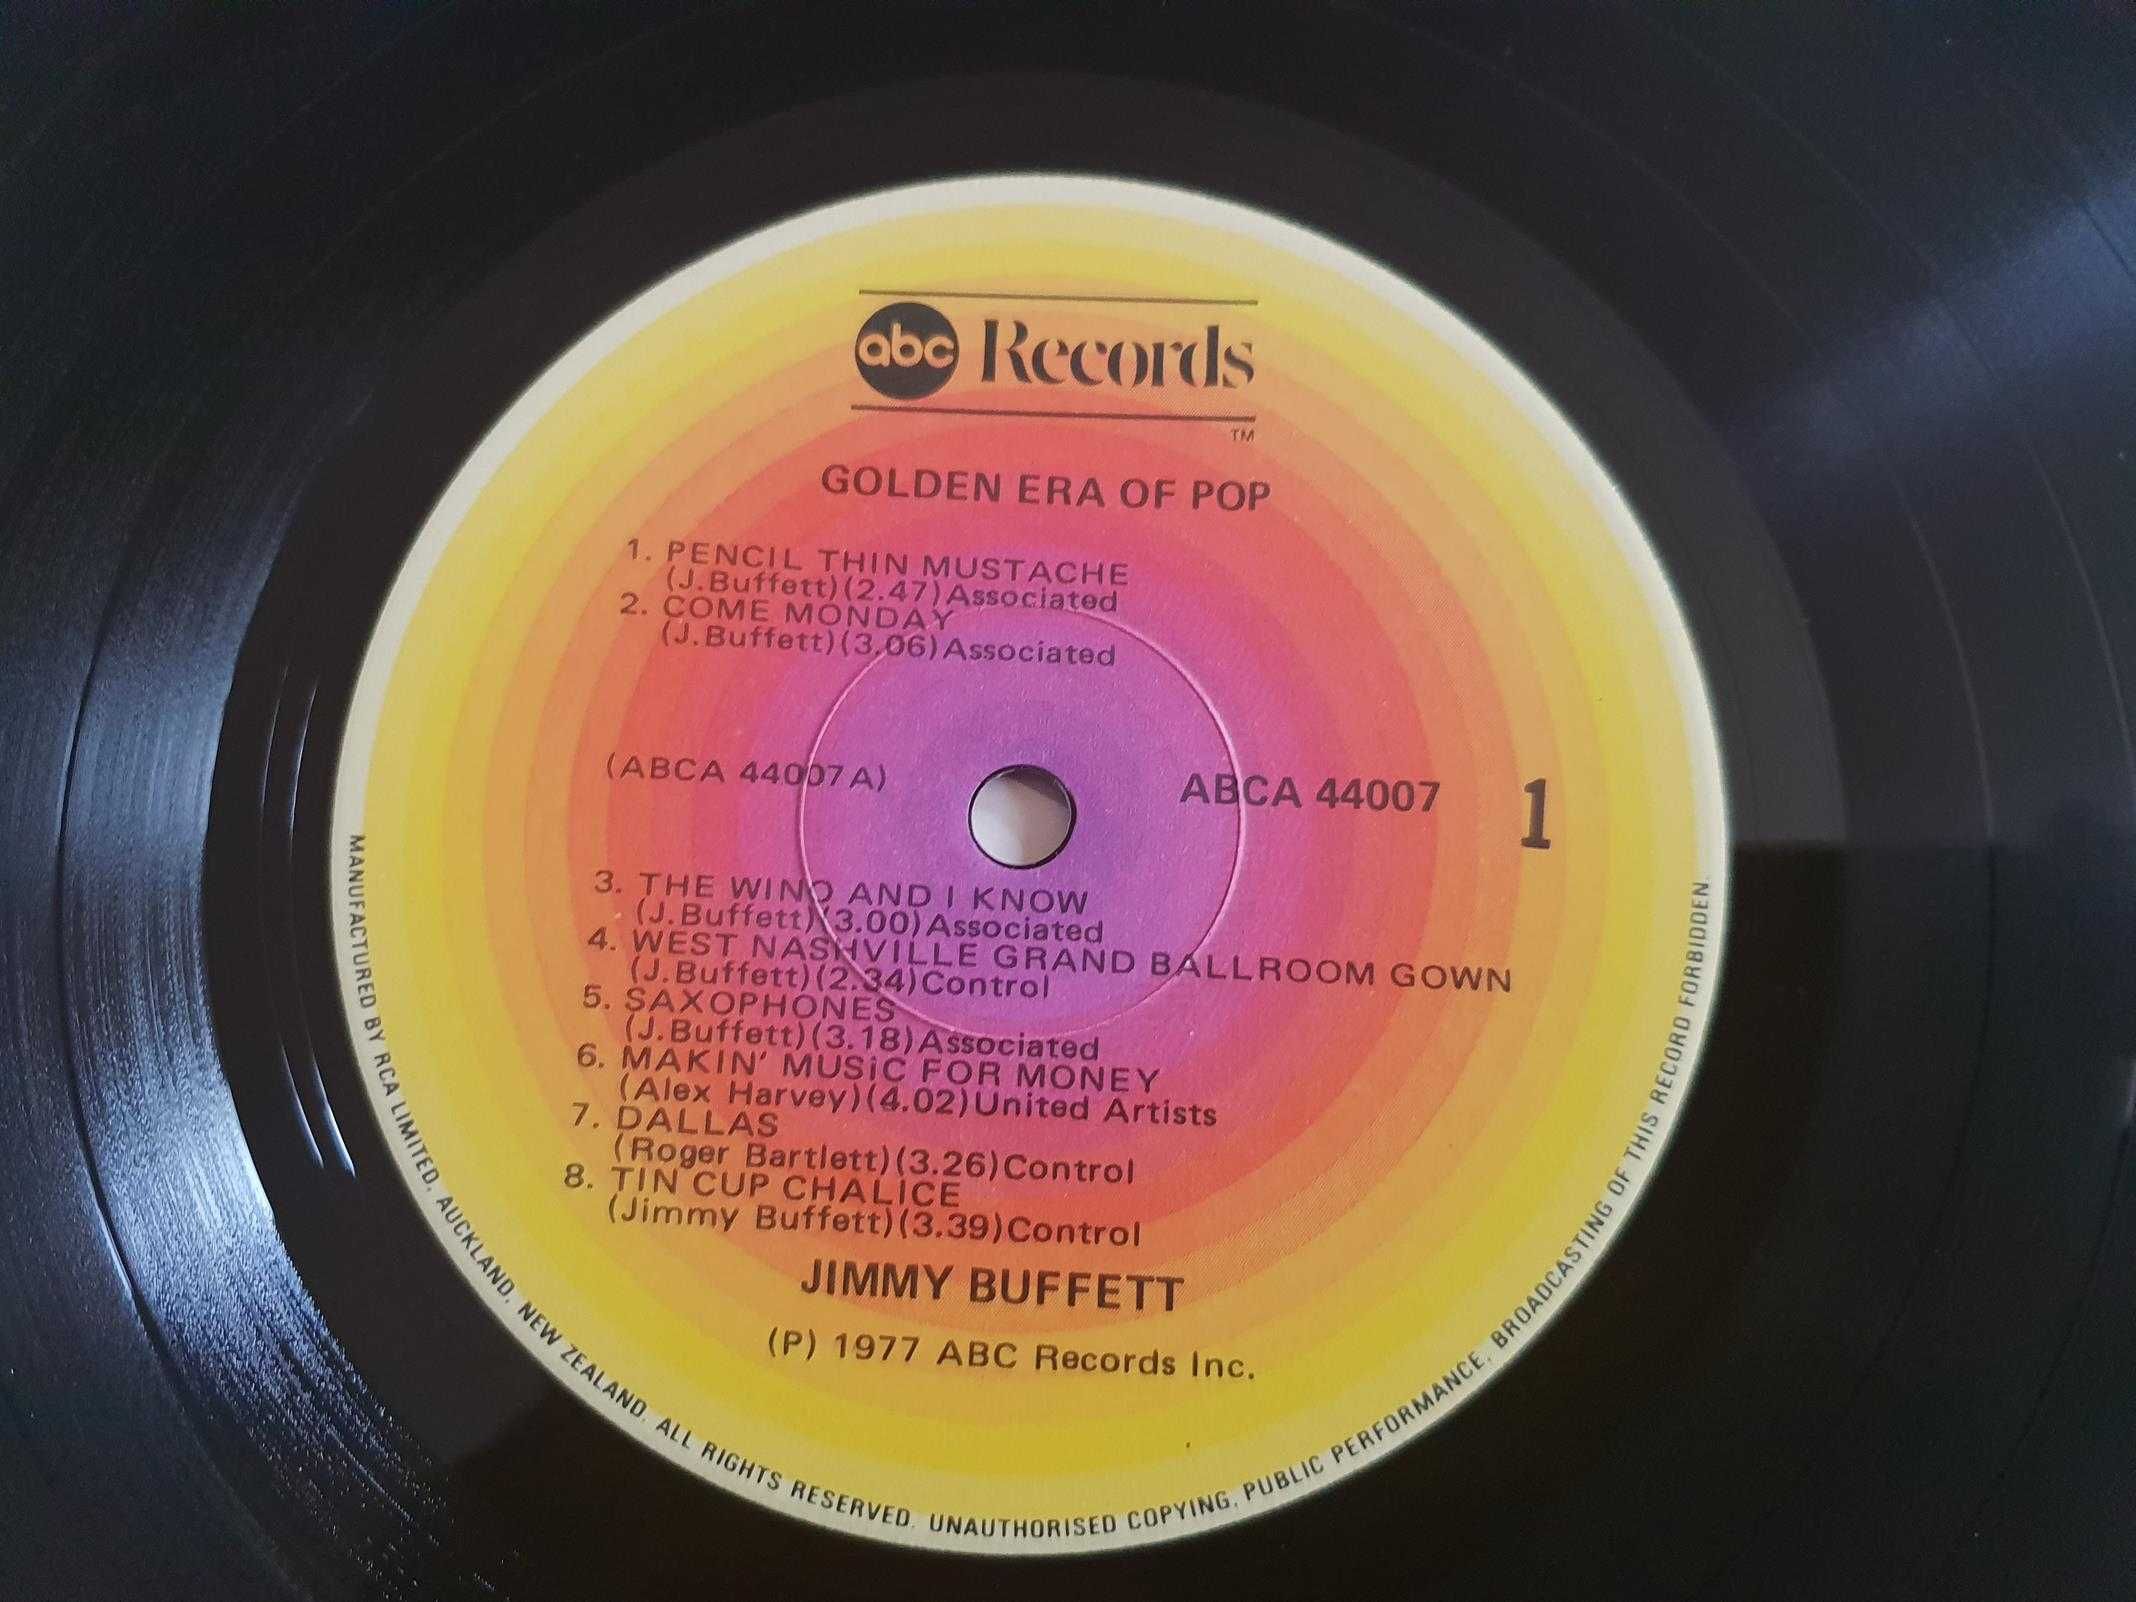 Jimmy Buffet - The Golden Ara of Pop